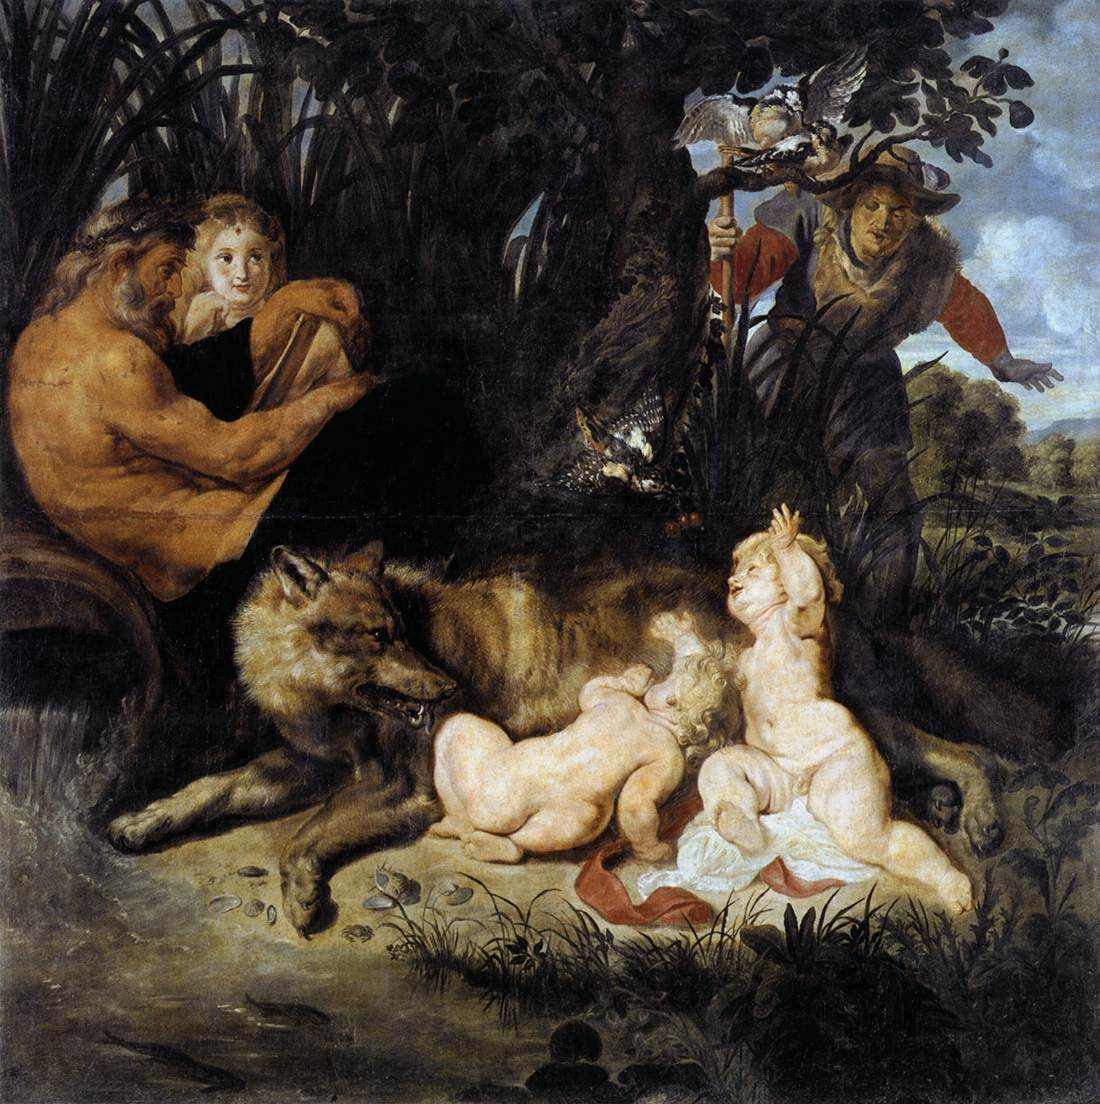 Rómulo y Remo (Rubens) - Wikipedia, la enciclopedia libre